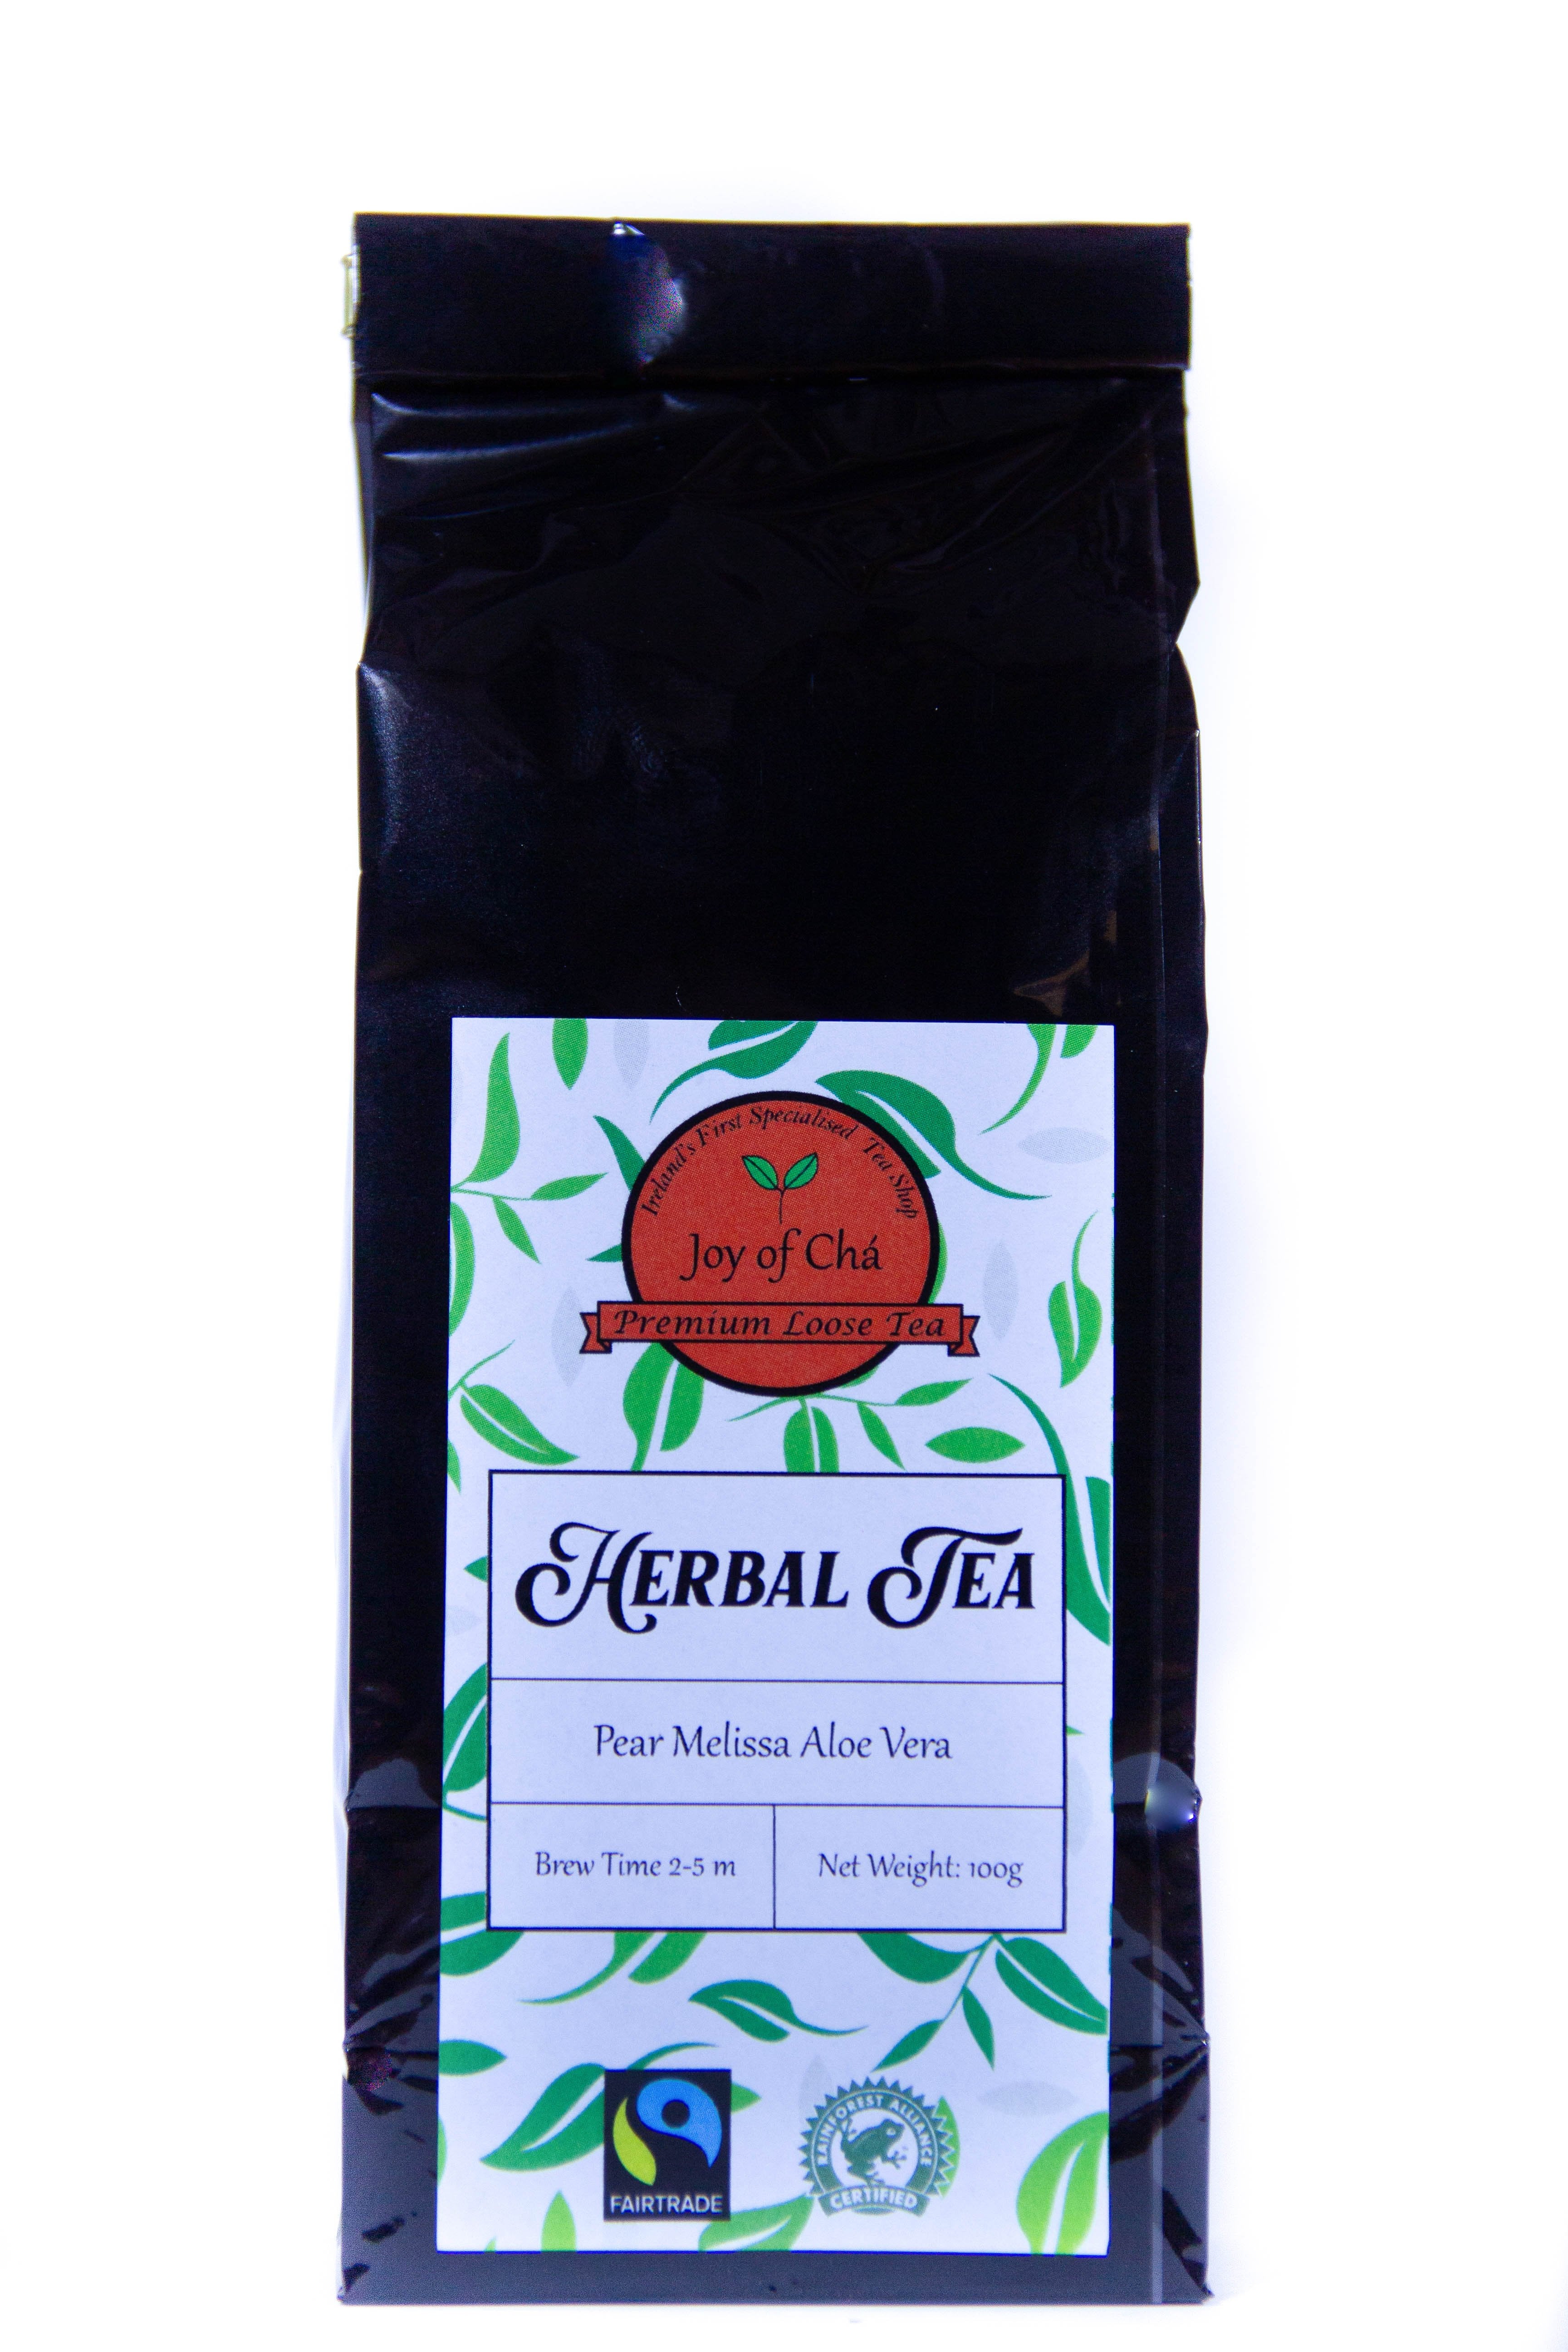 Pear Melissa Aloe Vera Herbal Tea Blend